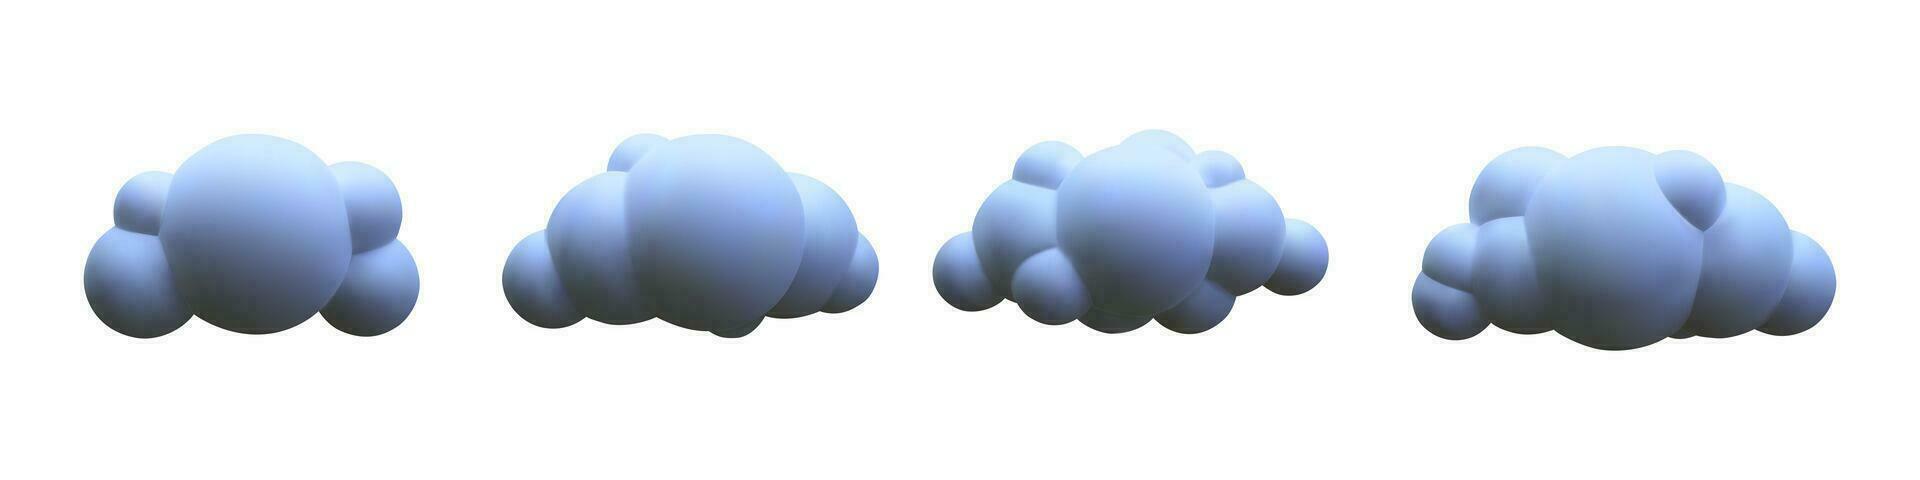 3d réaliste des nuages collection. vecteur illustration